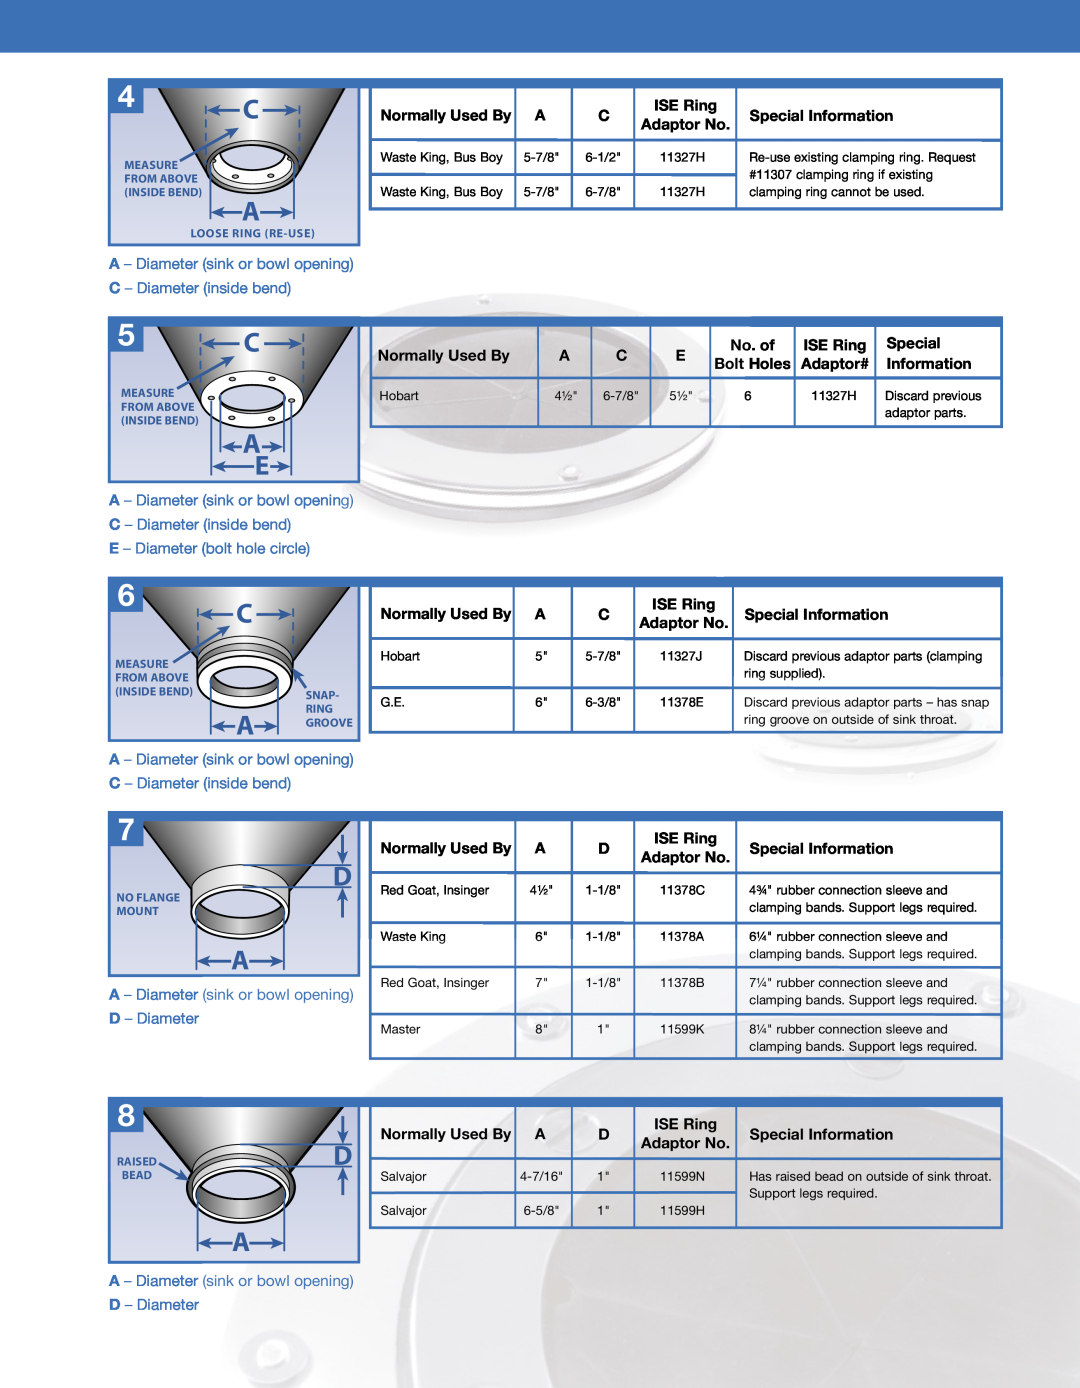 InSinkErator SS-1000, SS-750 A - Diameter sink or bowl opening D - Diameter, E - Diameter bolt hole circle, Hobart, 6-7/8 